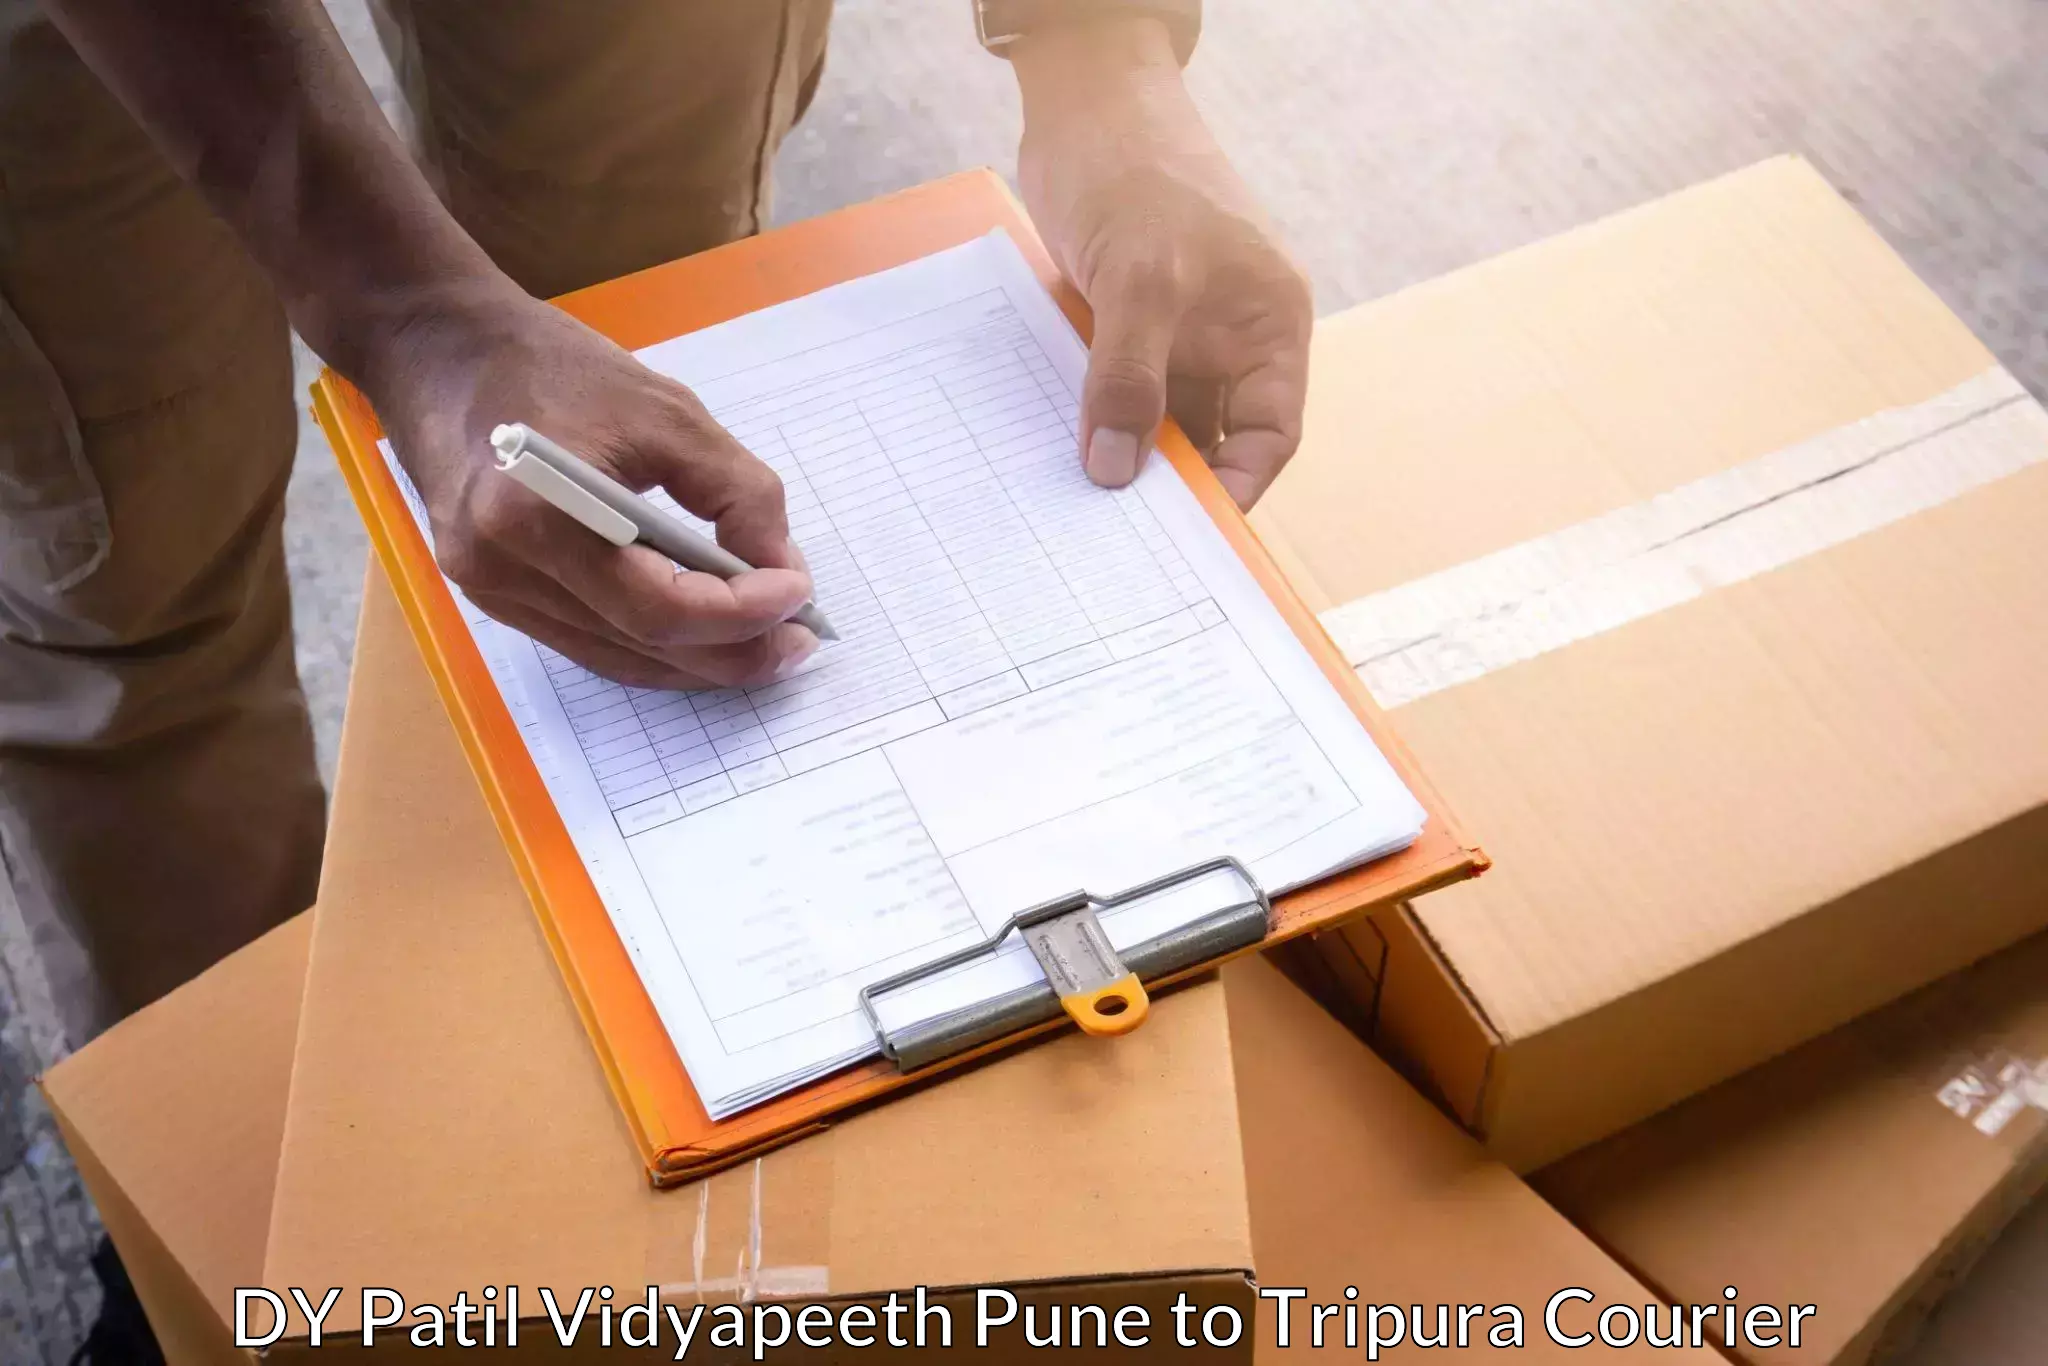 Express logistics service DY Patil Vidyapeeth Pune to Aambasa